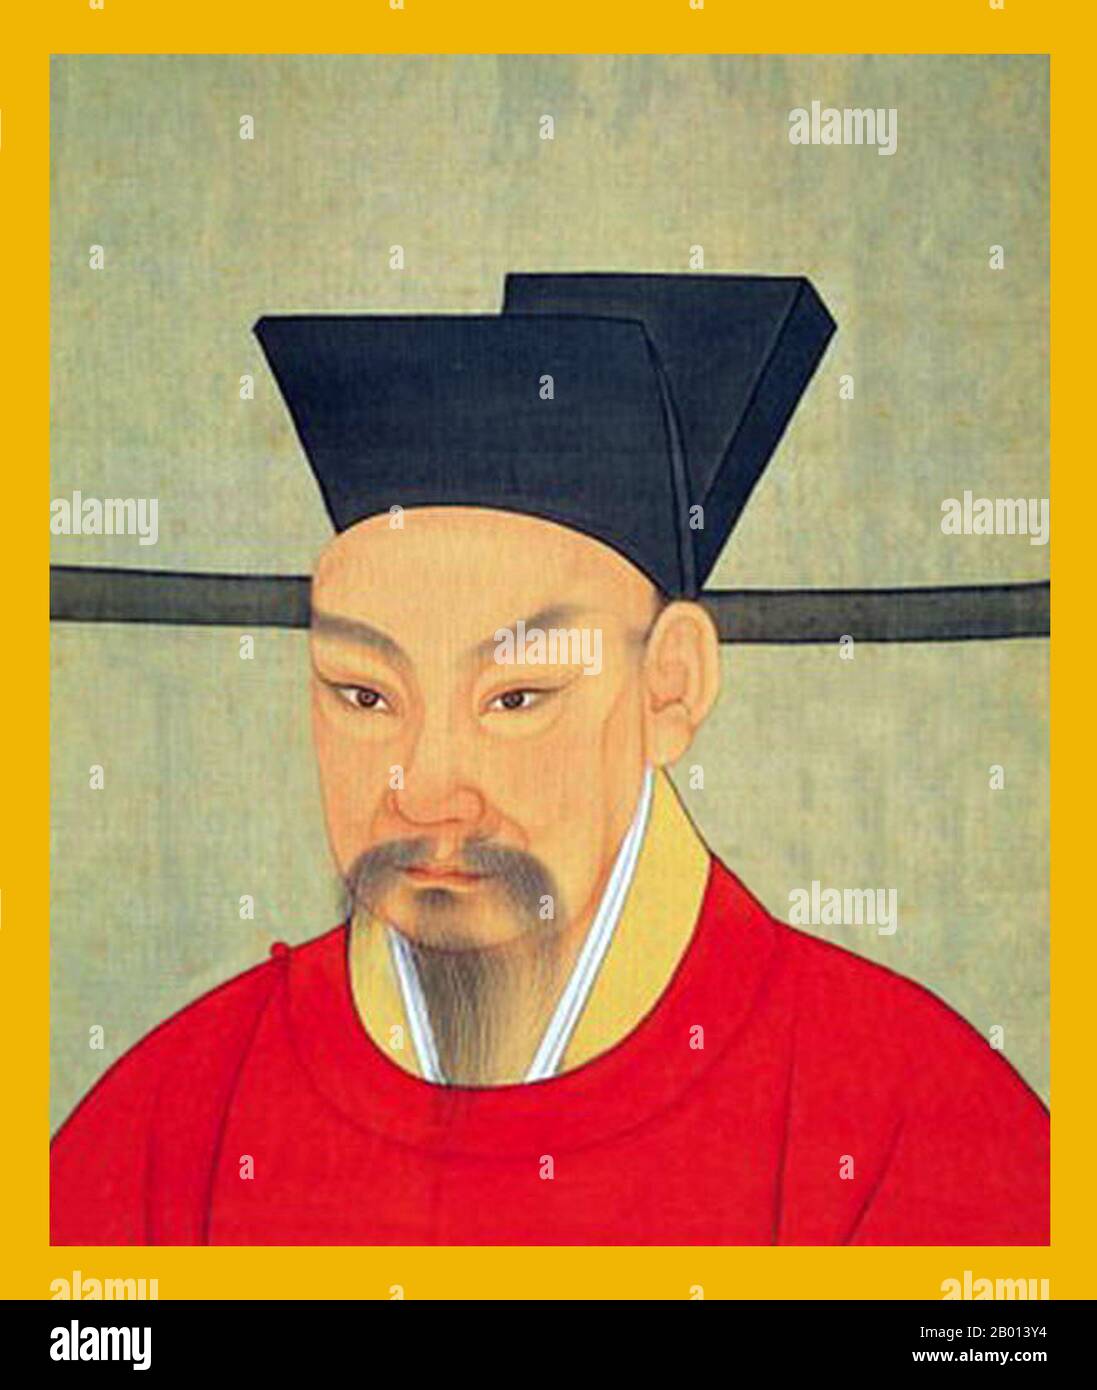 Chine : Empereur Lizong (26 janvier 1205 - 16 novembre 1264), 14e souverain de la dynastie Song et 5e souverain de la chanson du Sud (r. 1224-1264). Peinture de défilement suspendue, c. 1224-1264. L'empereur Lizong, nom personnel Zhao Yun et connu à l'origine sous le nom de Zhao Yuju et Zhao Guicheng, était le cinquième empereur du chant du Sud. Le long règne de Lizong de quarante ans n'a pas fait grand chose pour améliorer la situation difficile de Song China était à l'époque. Lizong ne s'intéressait pas aux affaires gouvernementales, déléguant les affaires entre les mains de ses ministres alors qu'il pourcharait aux plaisirs frivoles, alors même que les Mongols approchaient. Banque D'Images